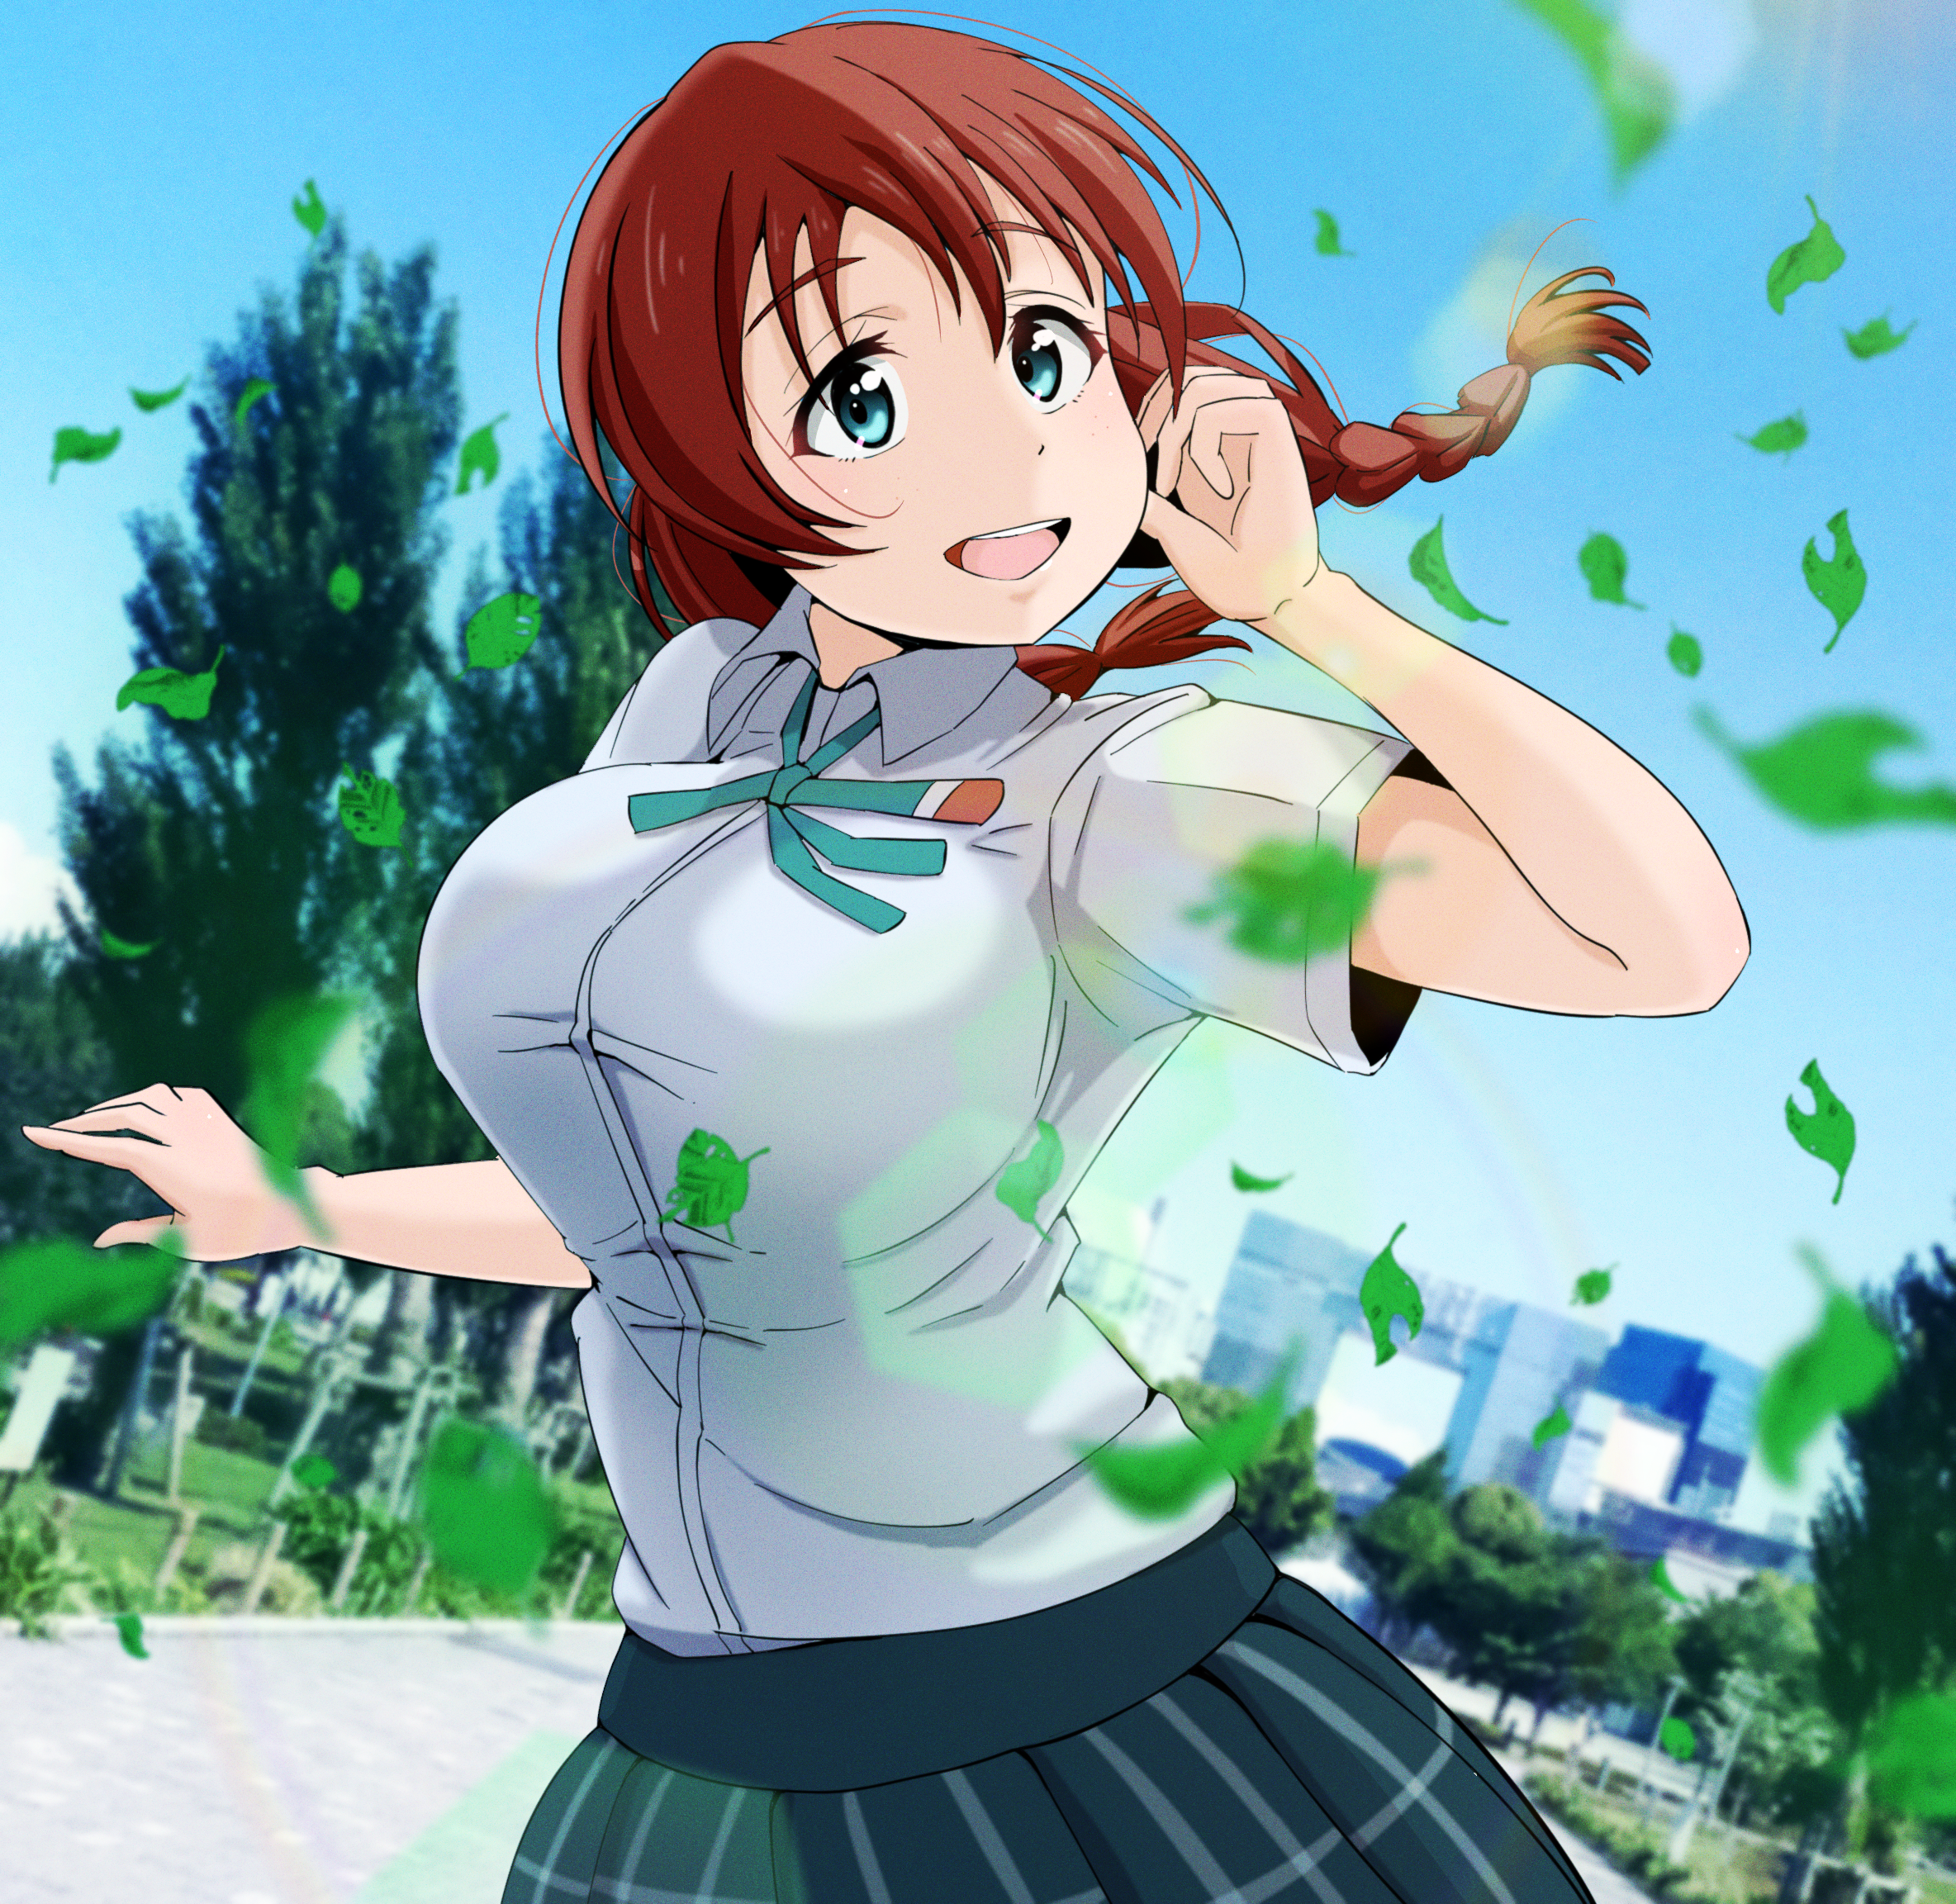 Anime Anime Girls Love Live Emma Verde Short Hair Redhead Solo Artwork Digital Art Fan Art Leaves 2368x2305